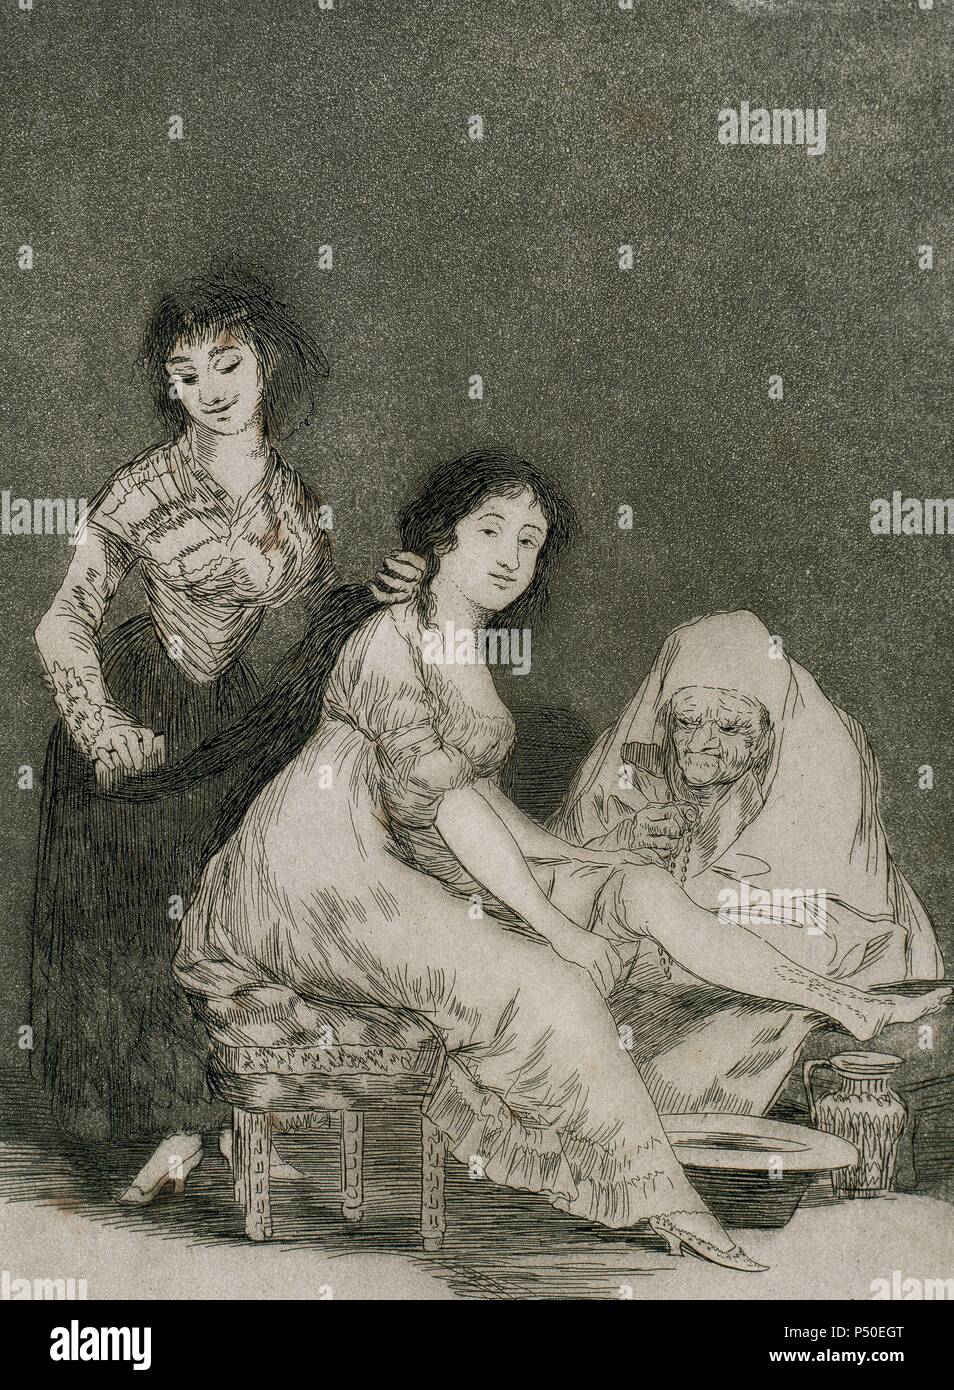 Francisco de Goya (1746-1828). Spanischer Maler und Graphiker. Los Caprichos. "Ruego por Ella' (Sie betet für Sie). Platte 31. Aquatinta. 1799. Reproduktion von M.SEGUI ich Riera. Stockfoto